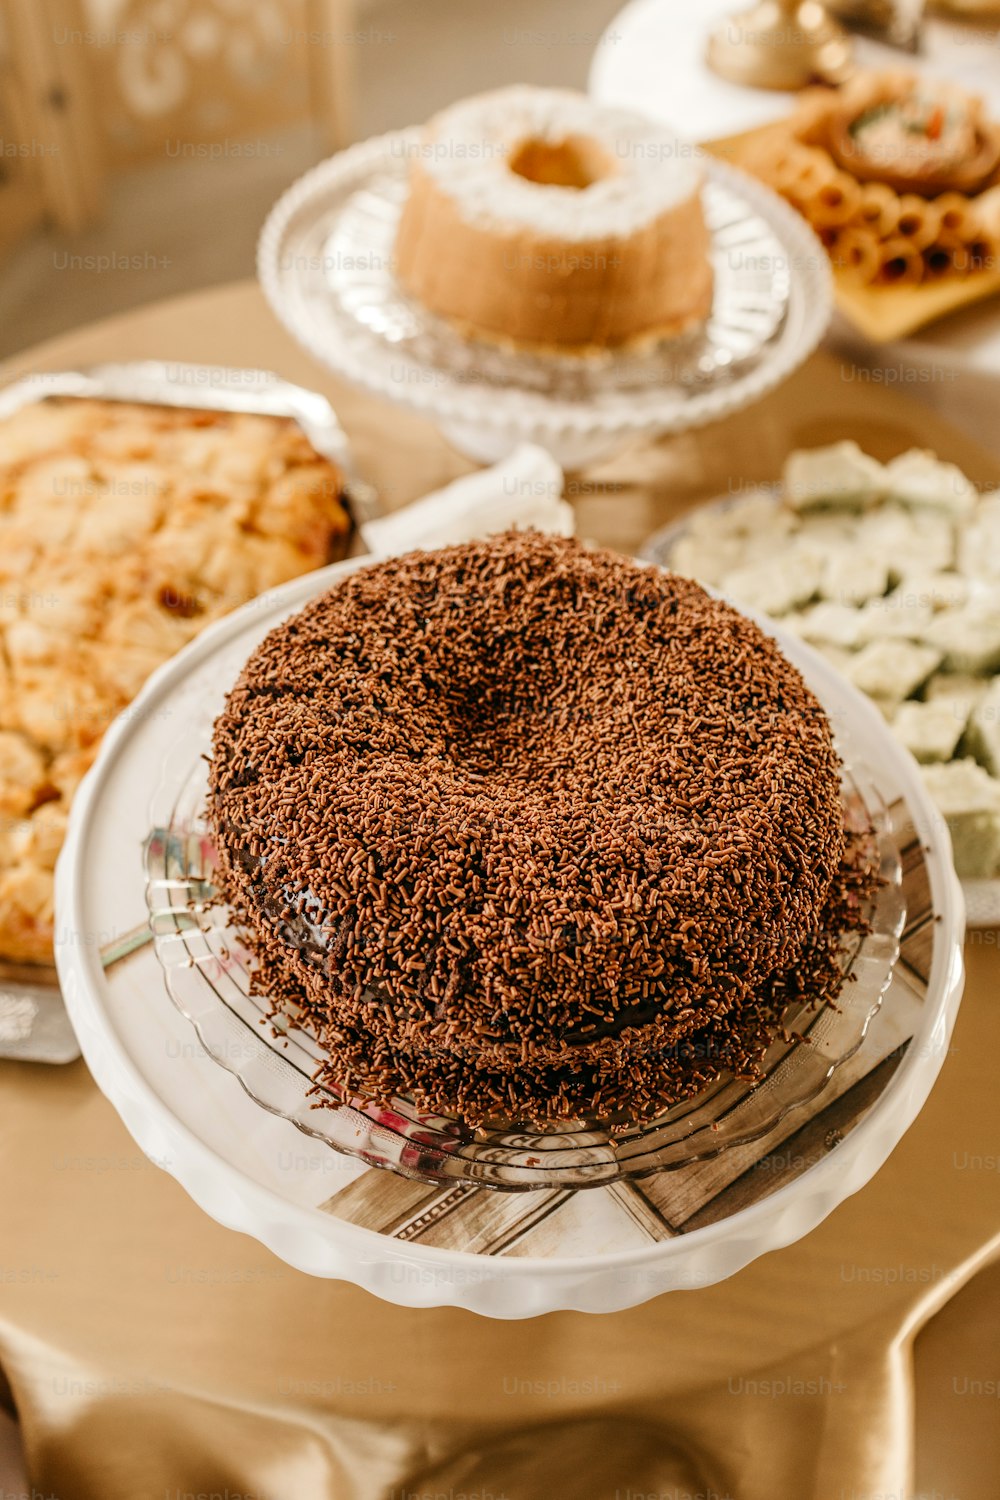 un tavolo sormontato da una torta ricoperta di glassa al cioccolato